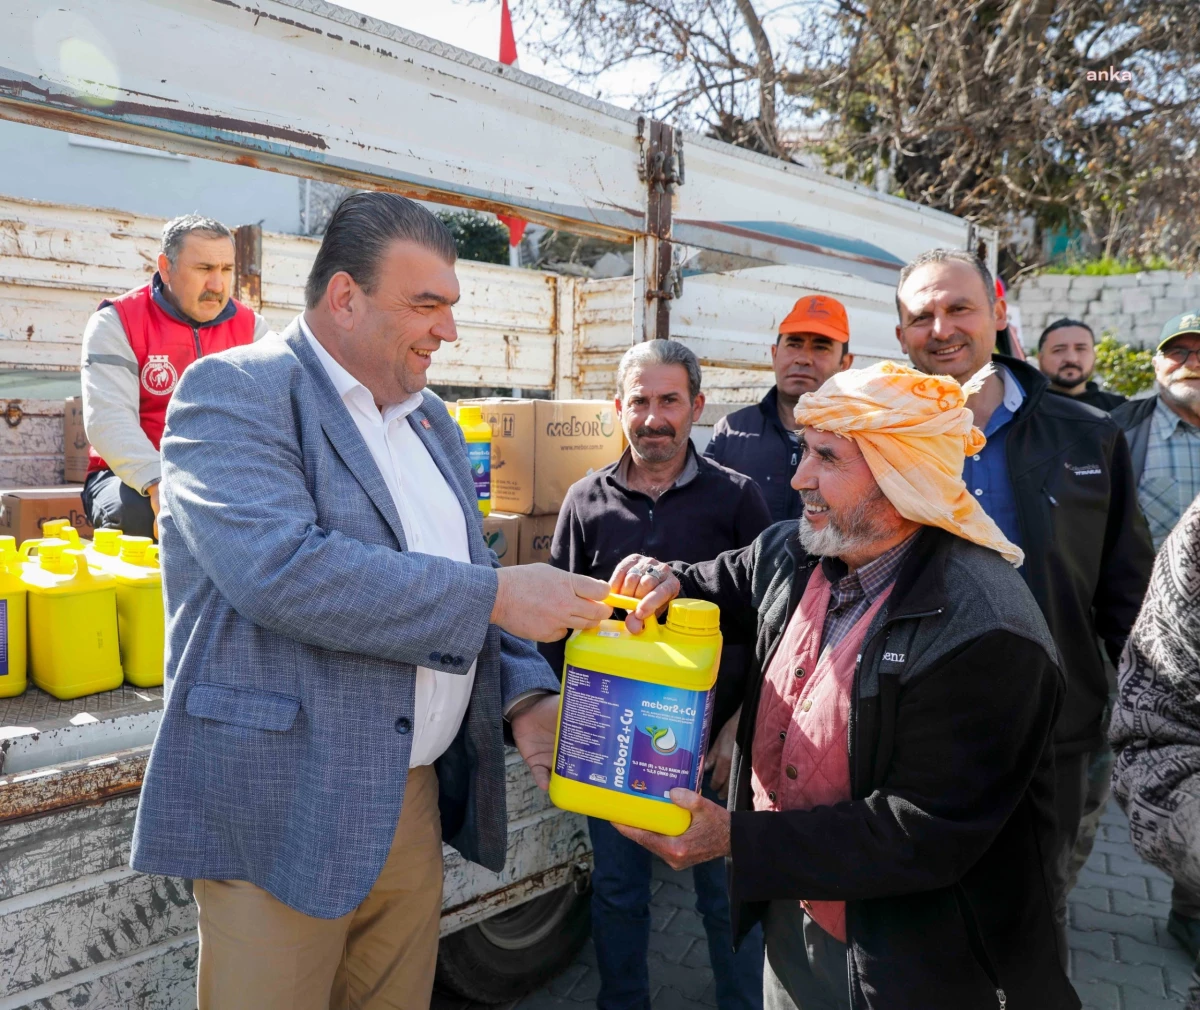 Seferihisar Belediyesi Üzüm Üreticilerine Sıvı Bordo Bulamacı Dağıttı